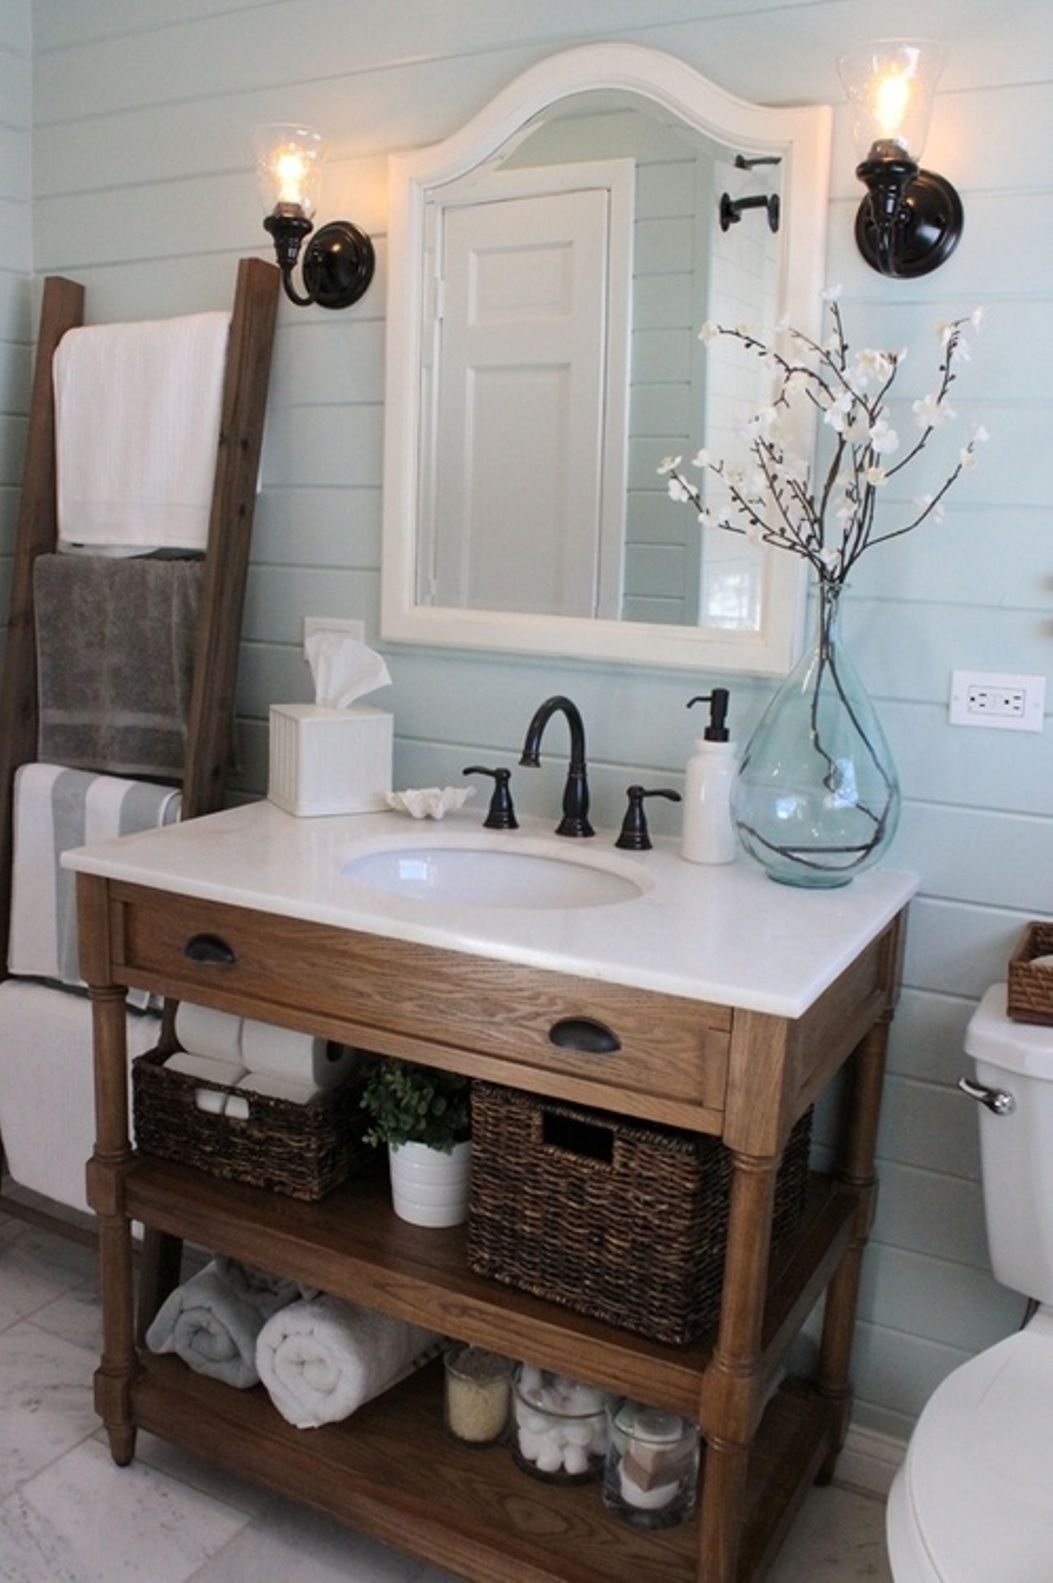 17 Inspiring Rustic Bathroom Decor Ideas for Cozy Home 